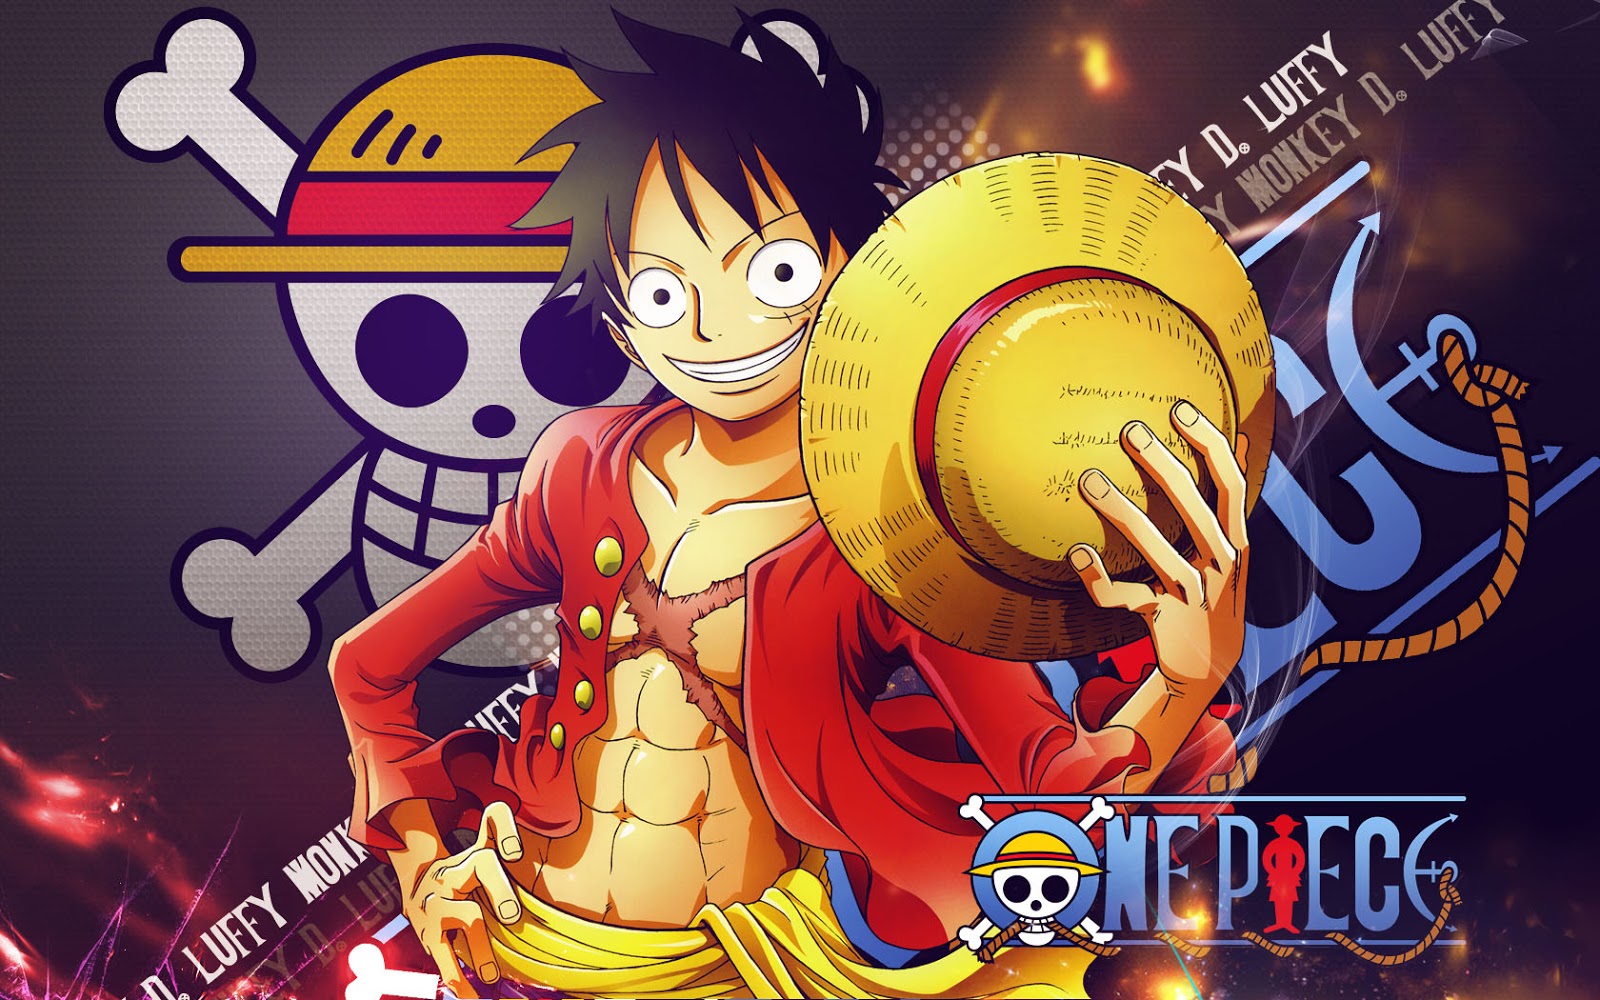 Cùng đắm mình trong thế giới mới đầy bí ẩn của One Piece với bức hình nền One Piece New World Wallpaper. Trải nghiệm những cuộc phiêu lưu mới cùng Luffy và đội quân Mũ Rơm, những đấu trường mới và kẻ thù mới đầy thử thách.